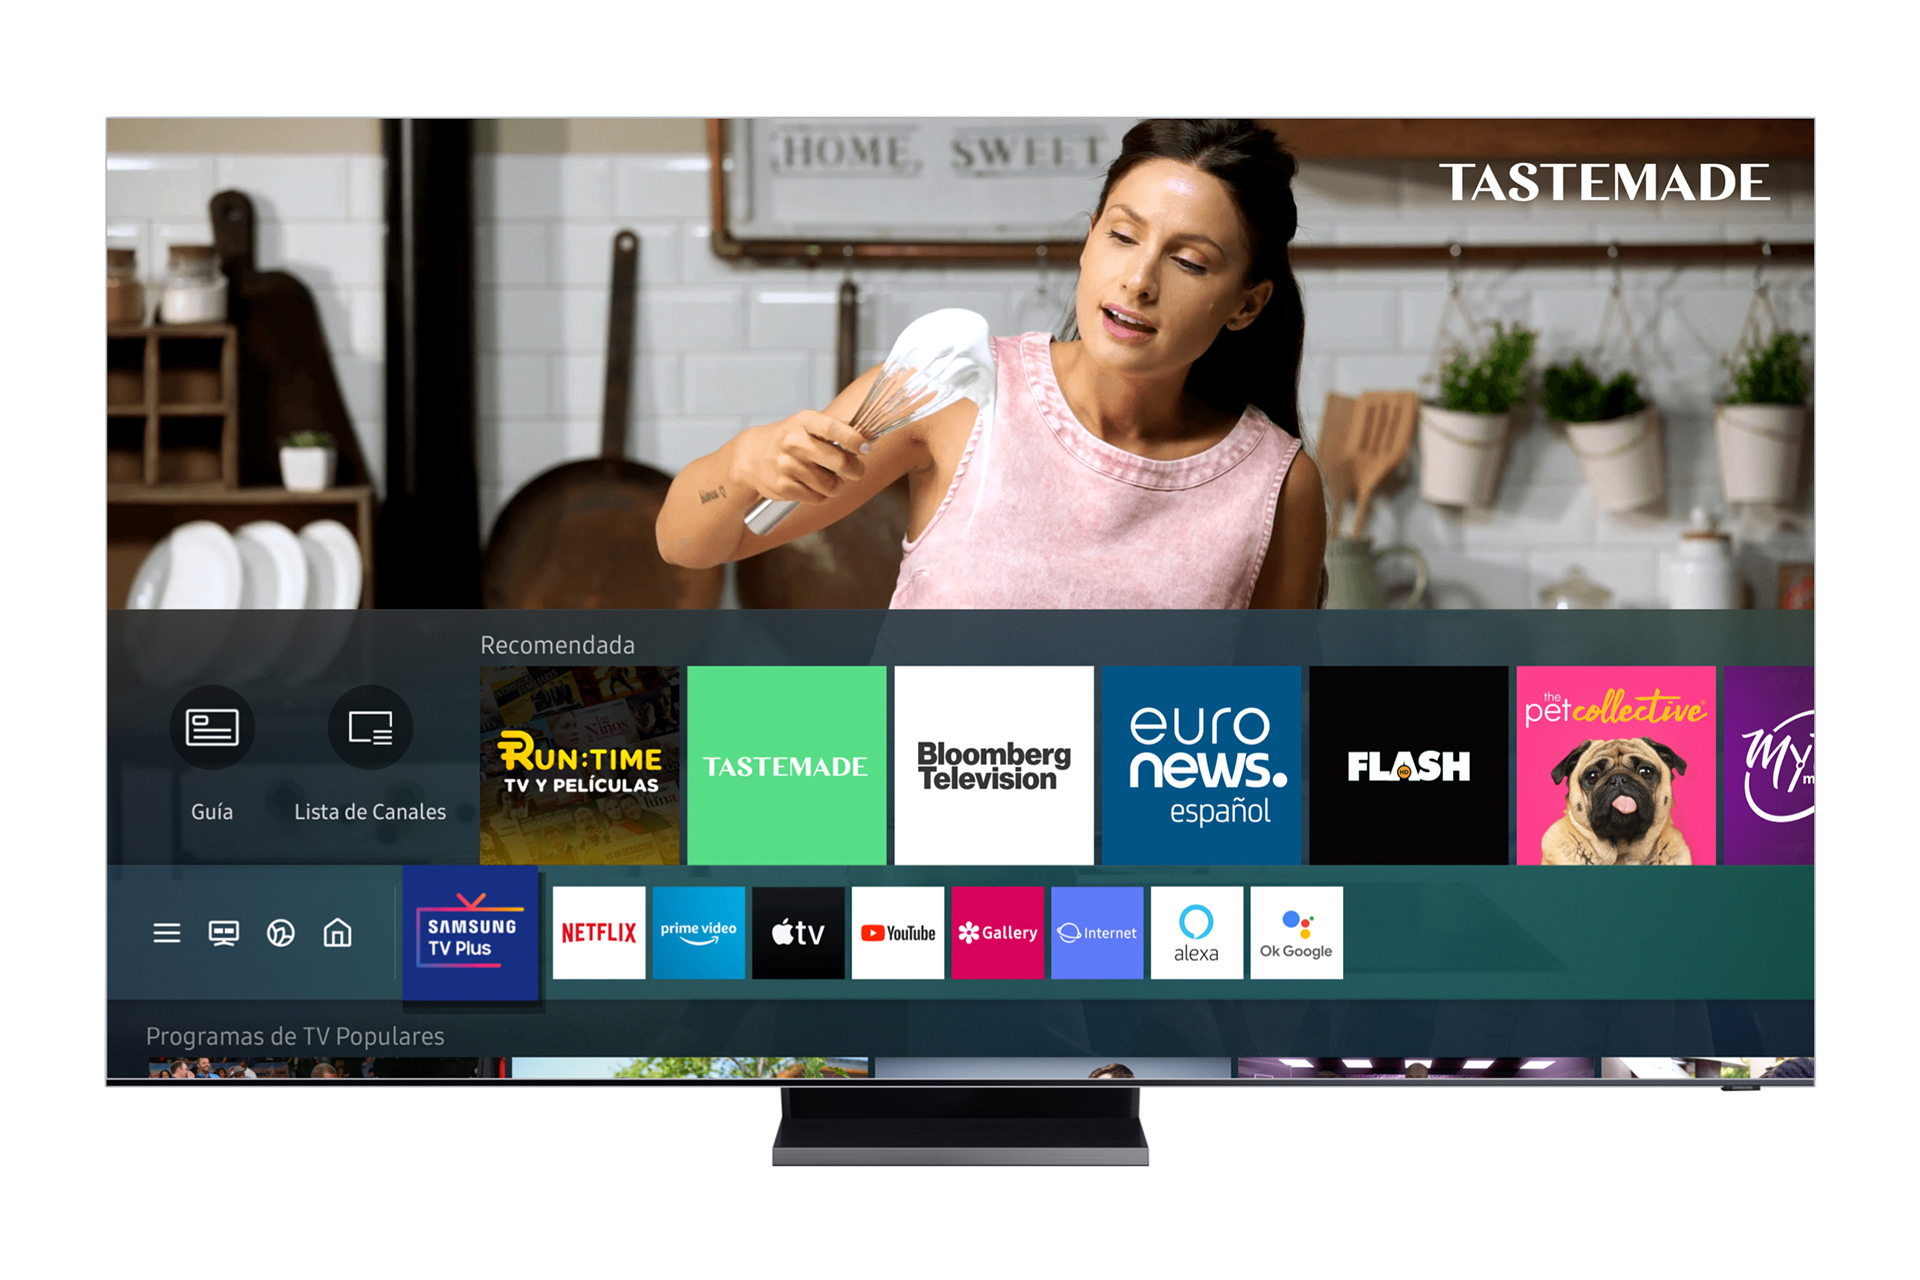 Samsung TV Plus se lanza en México brindando televisión gratuita y sin suscripciones a los usuarios de una Smart TV de Samsung